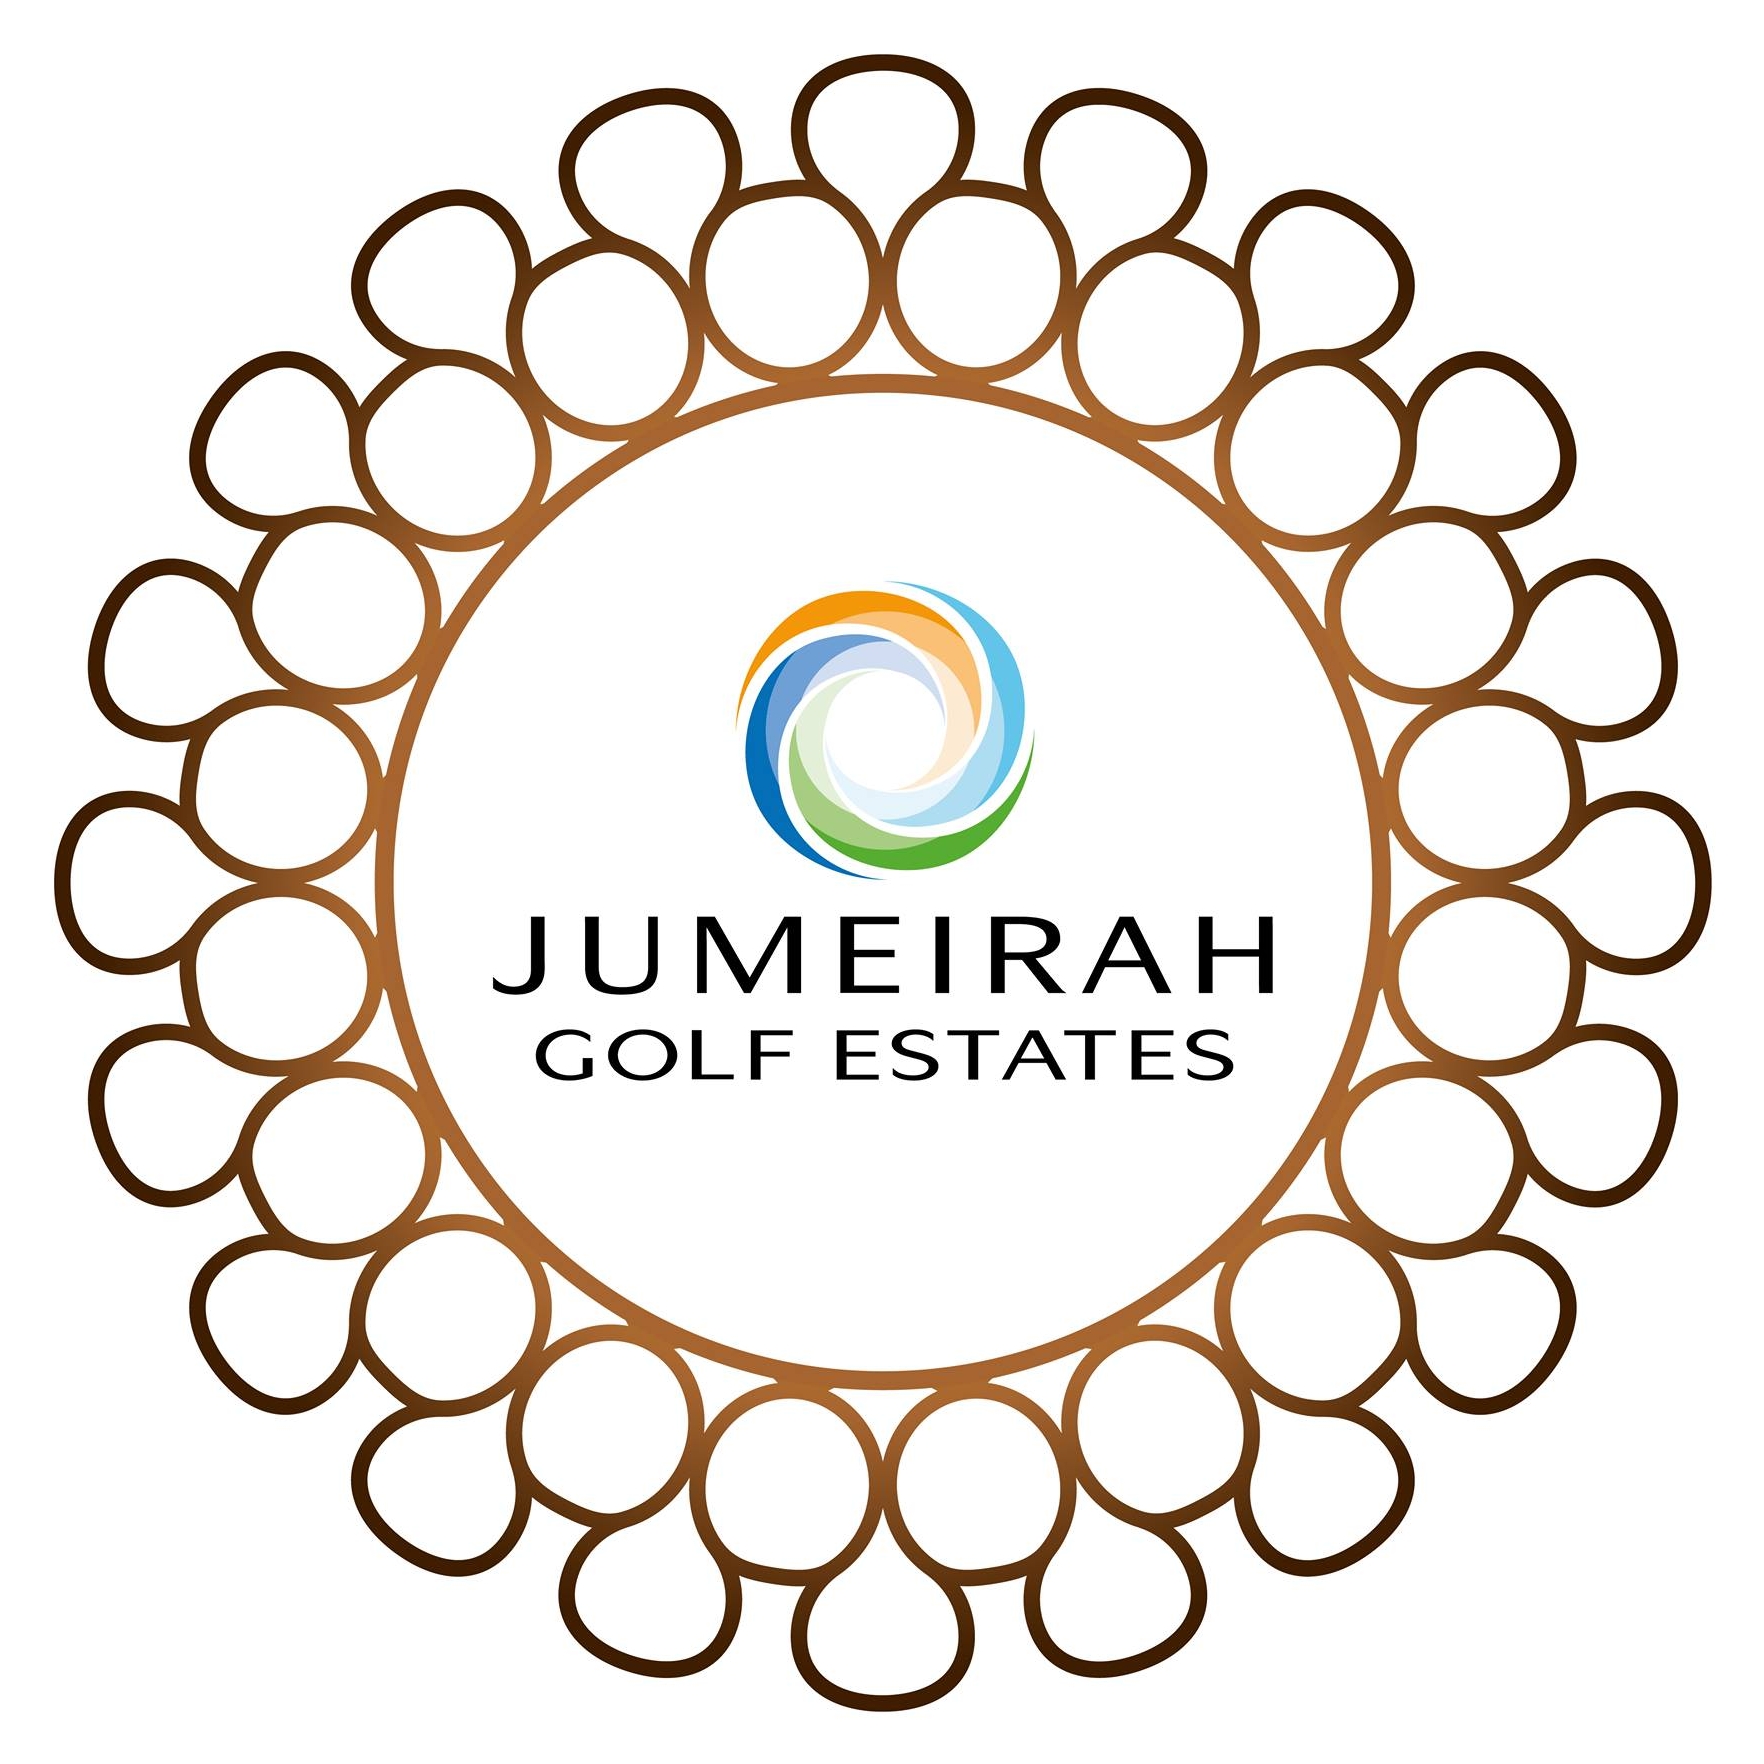 Jumeirah Golf Estates - logo